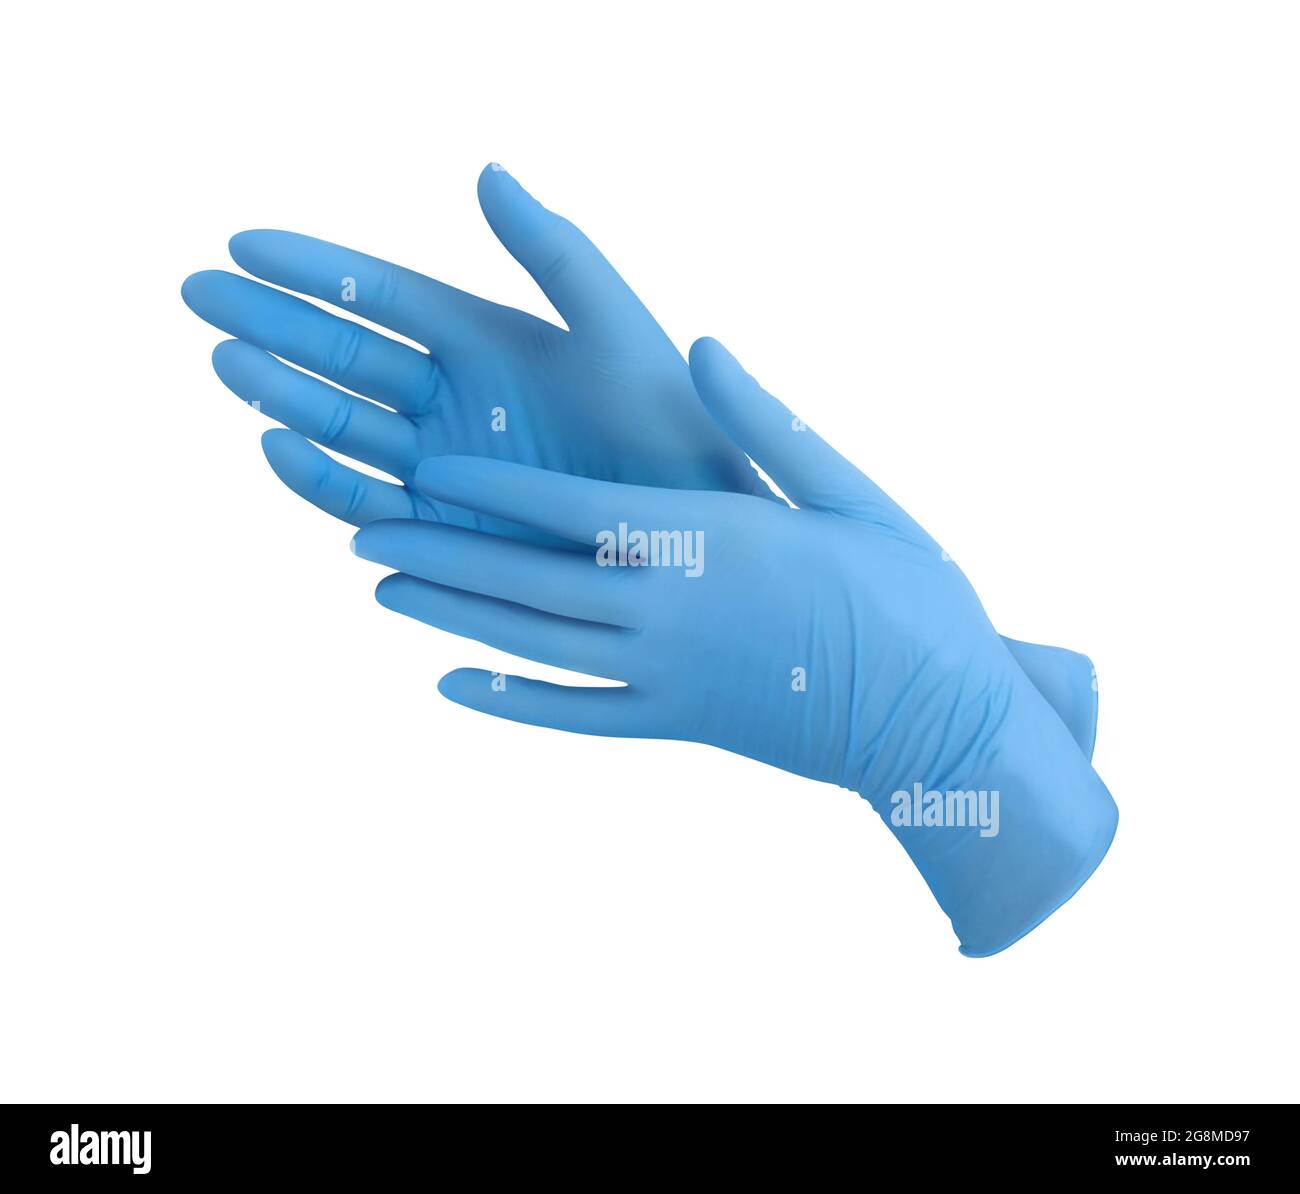 Guanti medici in nitrile.due guanti chirurgici blu isolati su sfondo bianco con le mani. Produzione di guanti in gomma, la mano umana indossa un glo in lattice Foto Stock